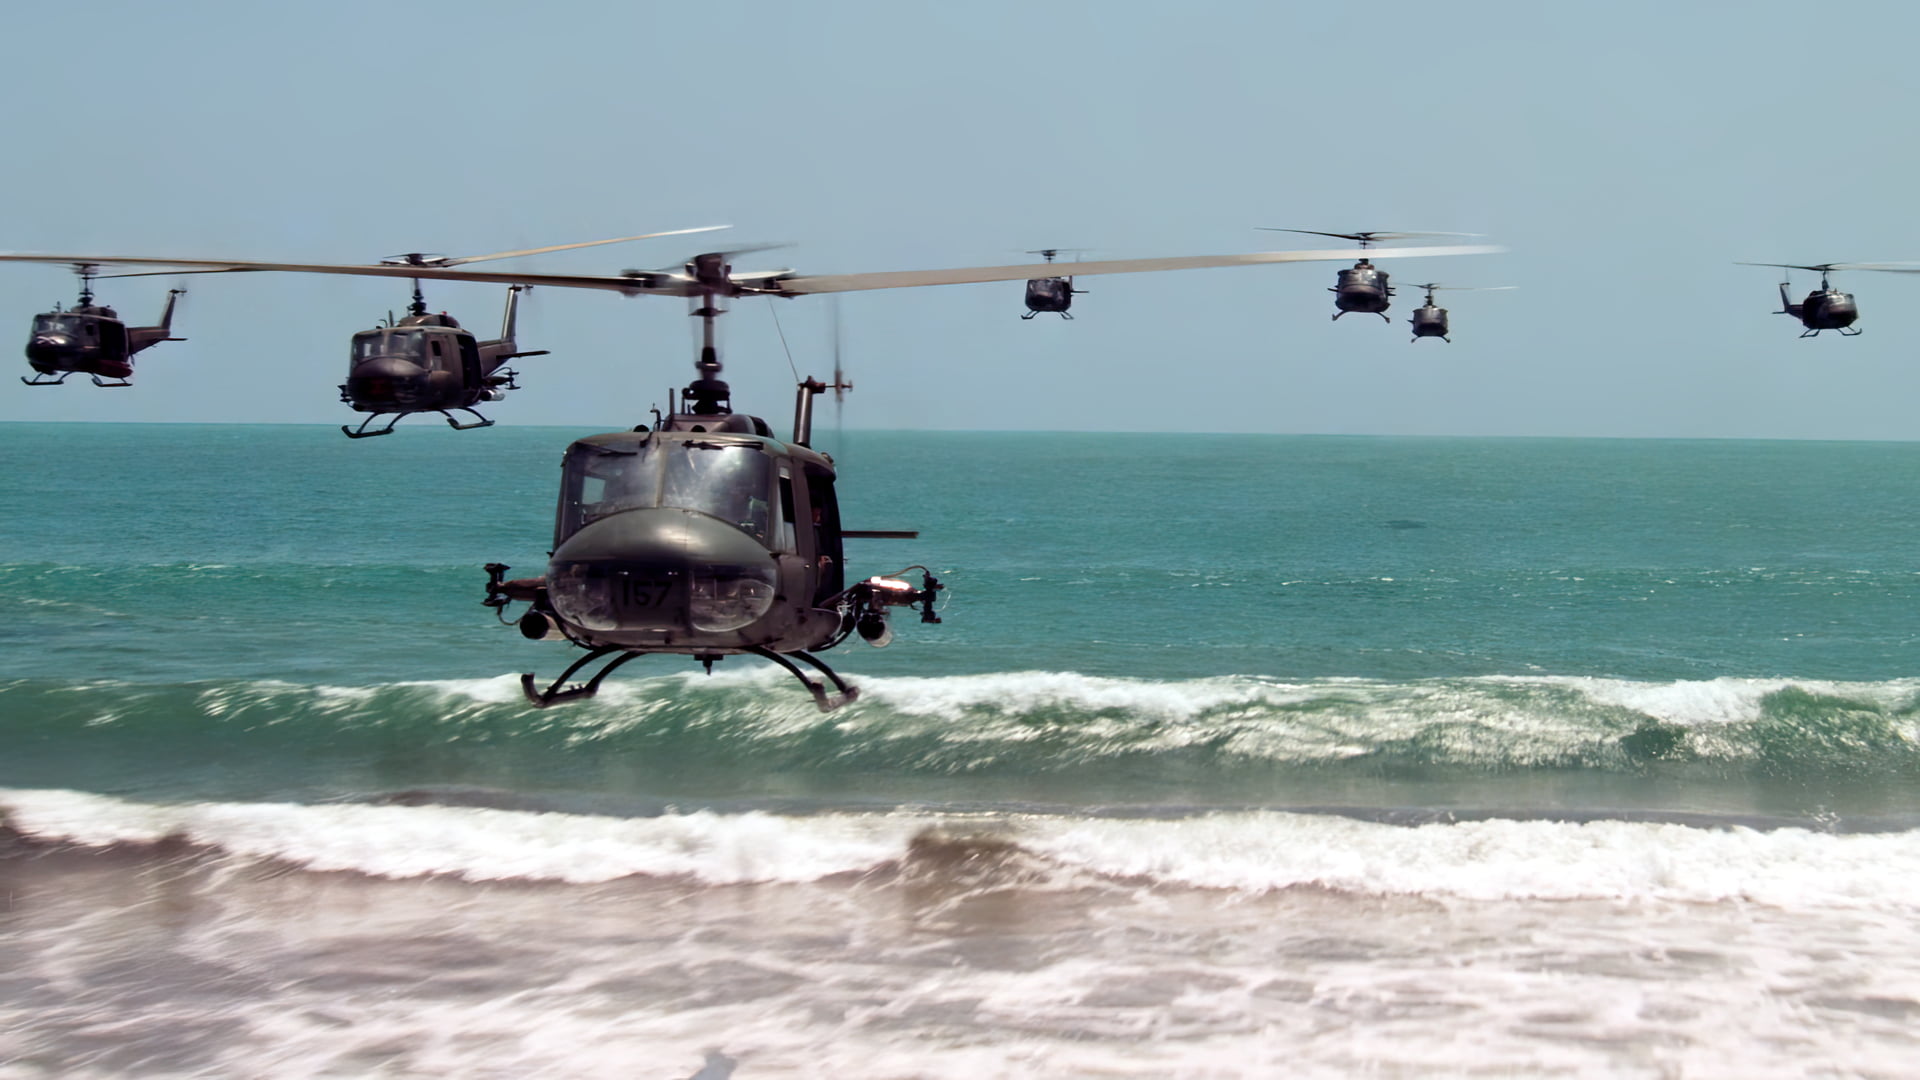 Apocalypse Now, helicopters, water, movies, film stills, Vietnam War